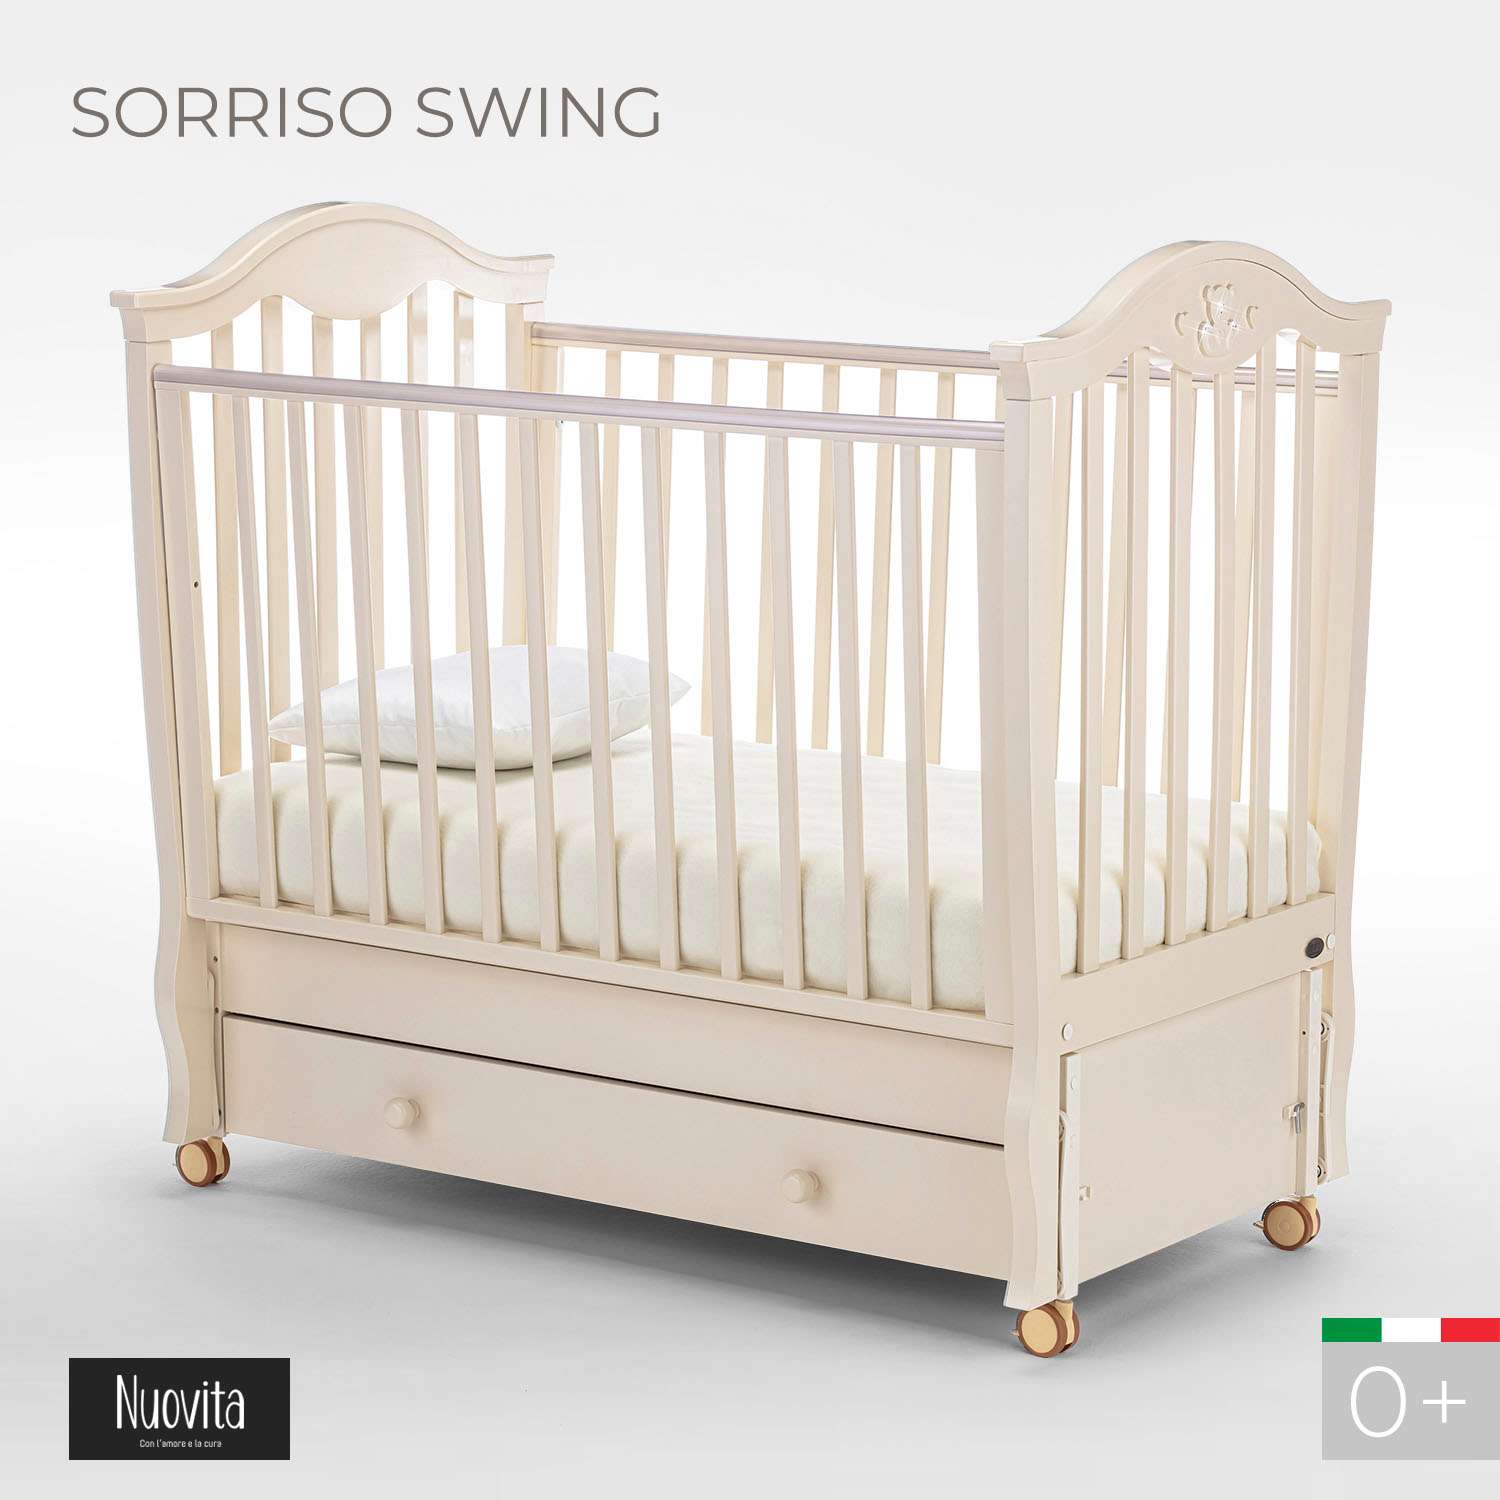 Детская кроватка Nuovita Sorriso Swing прямоугольная, поперечный маятник (слоновая кость) - фото 2